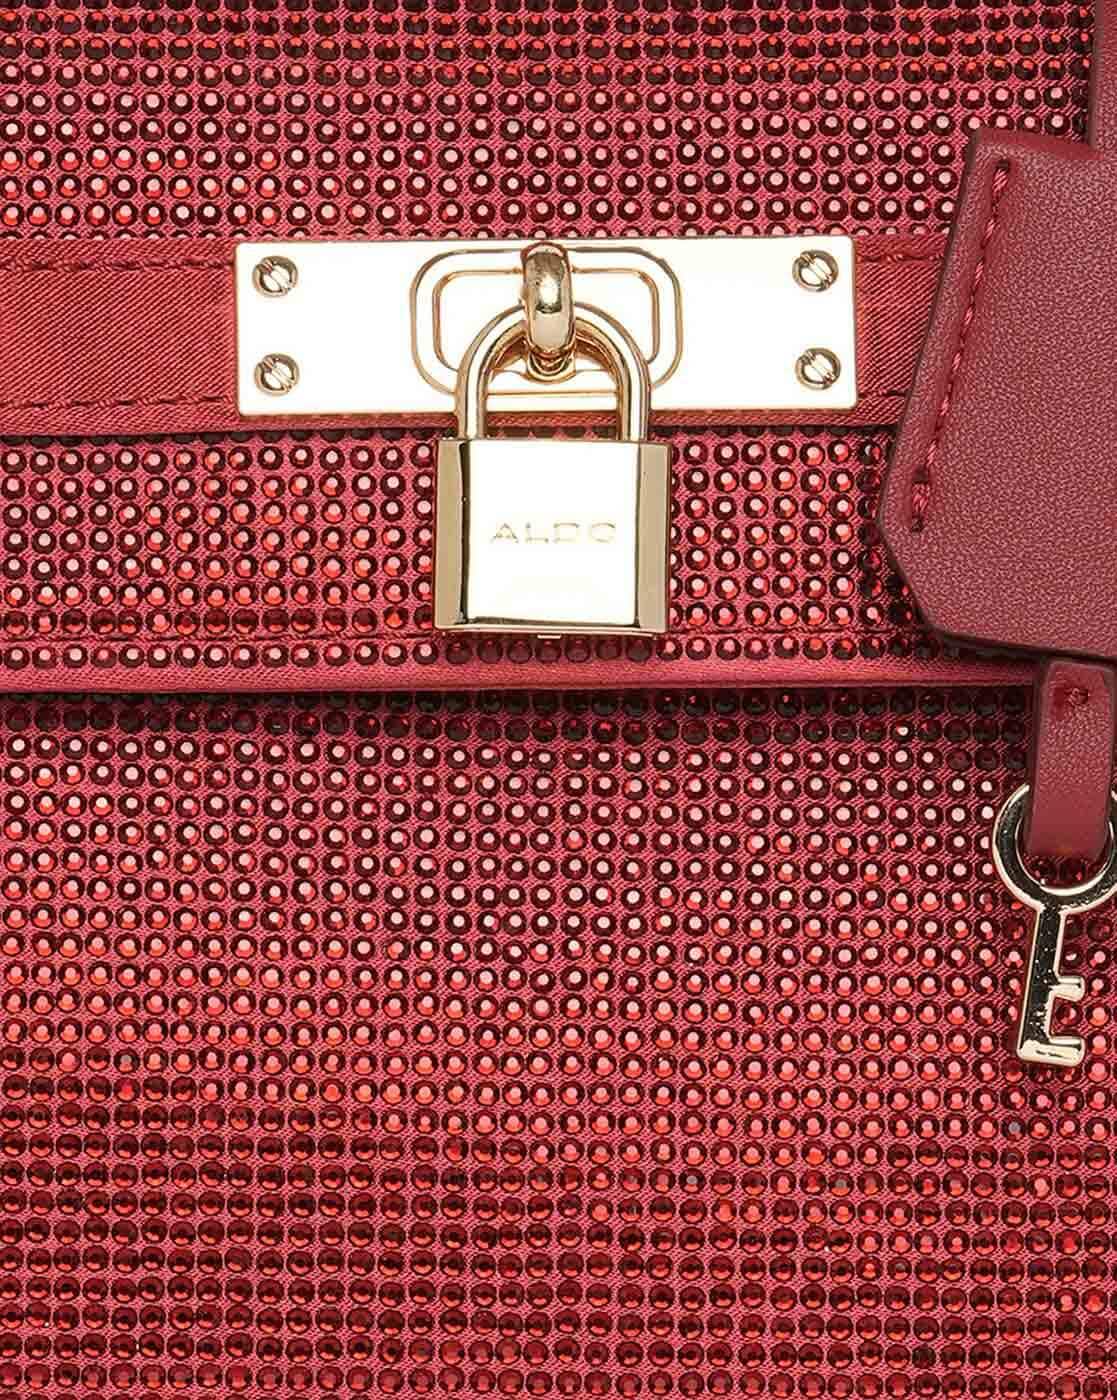 Plain Pu Leather Aldo Tote Handbag at Rs 650 in Mumbai | ID: 25279477712